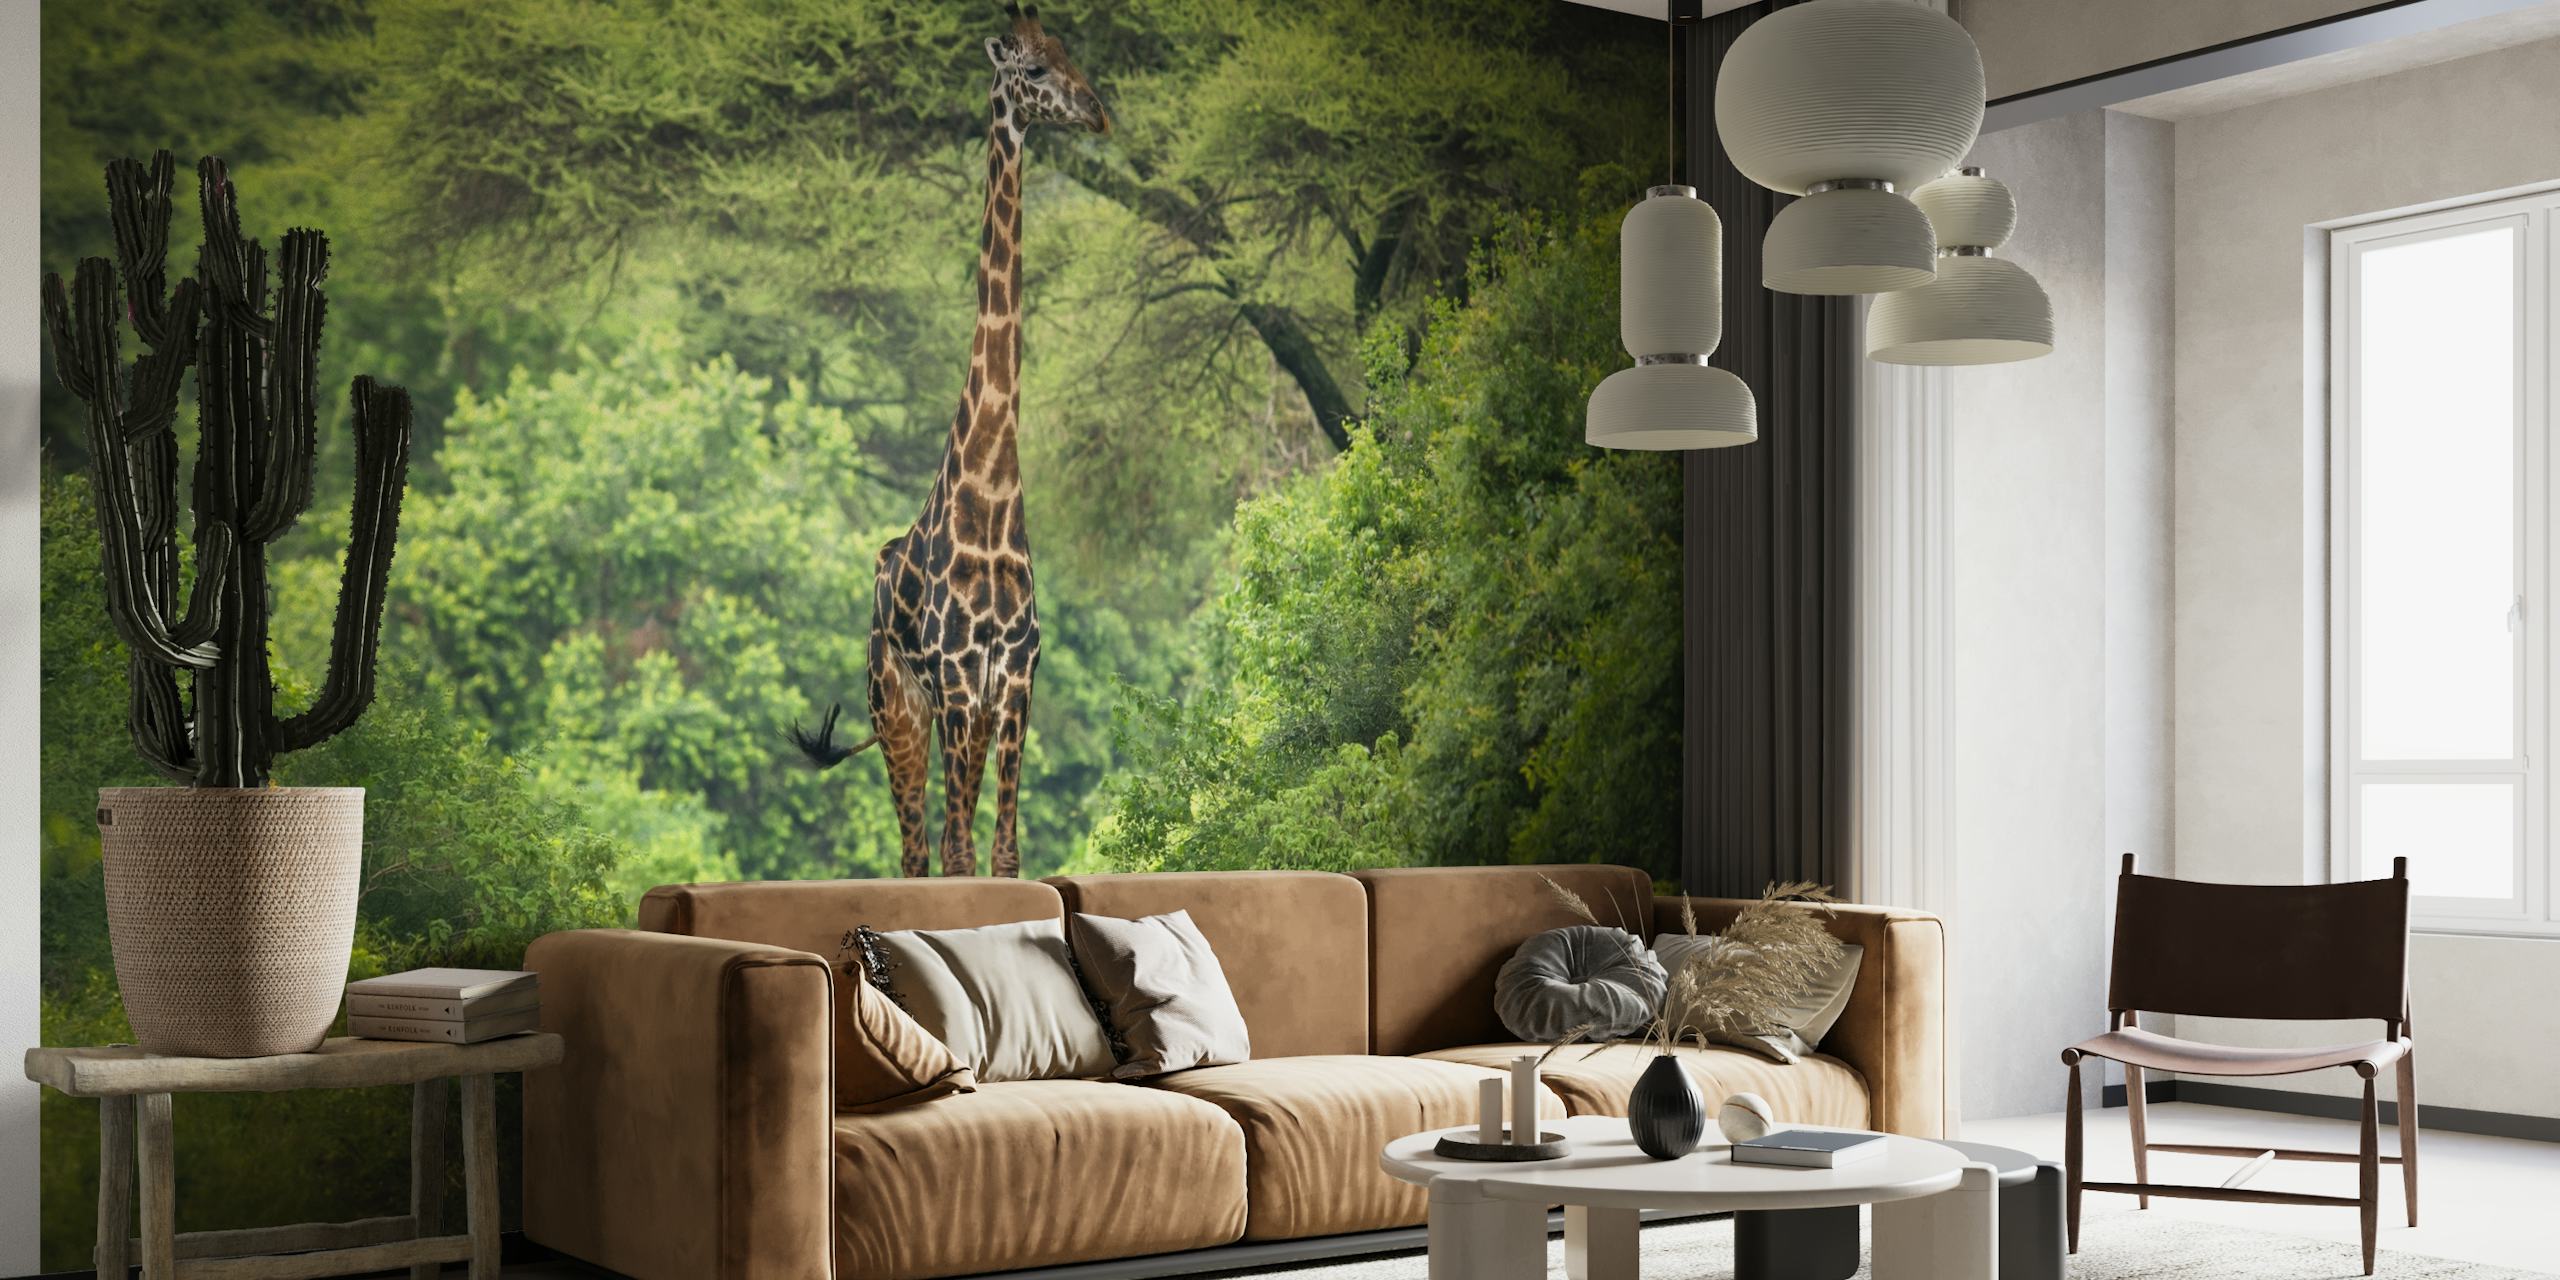 Fototapete Giraffe und Rabe in einem grünen Wald